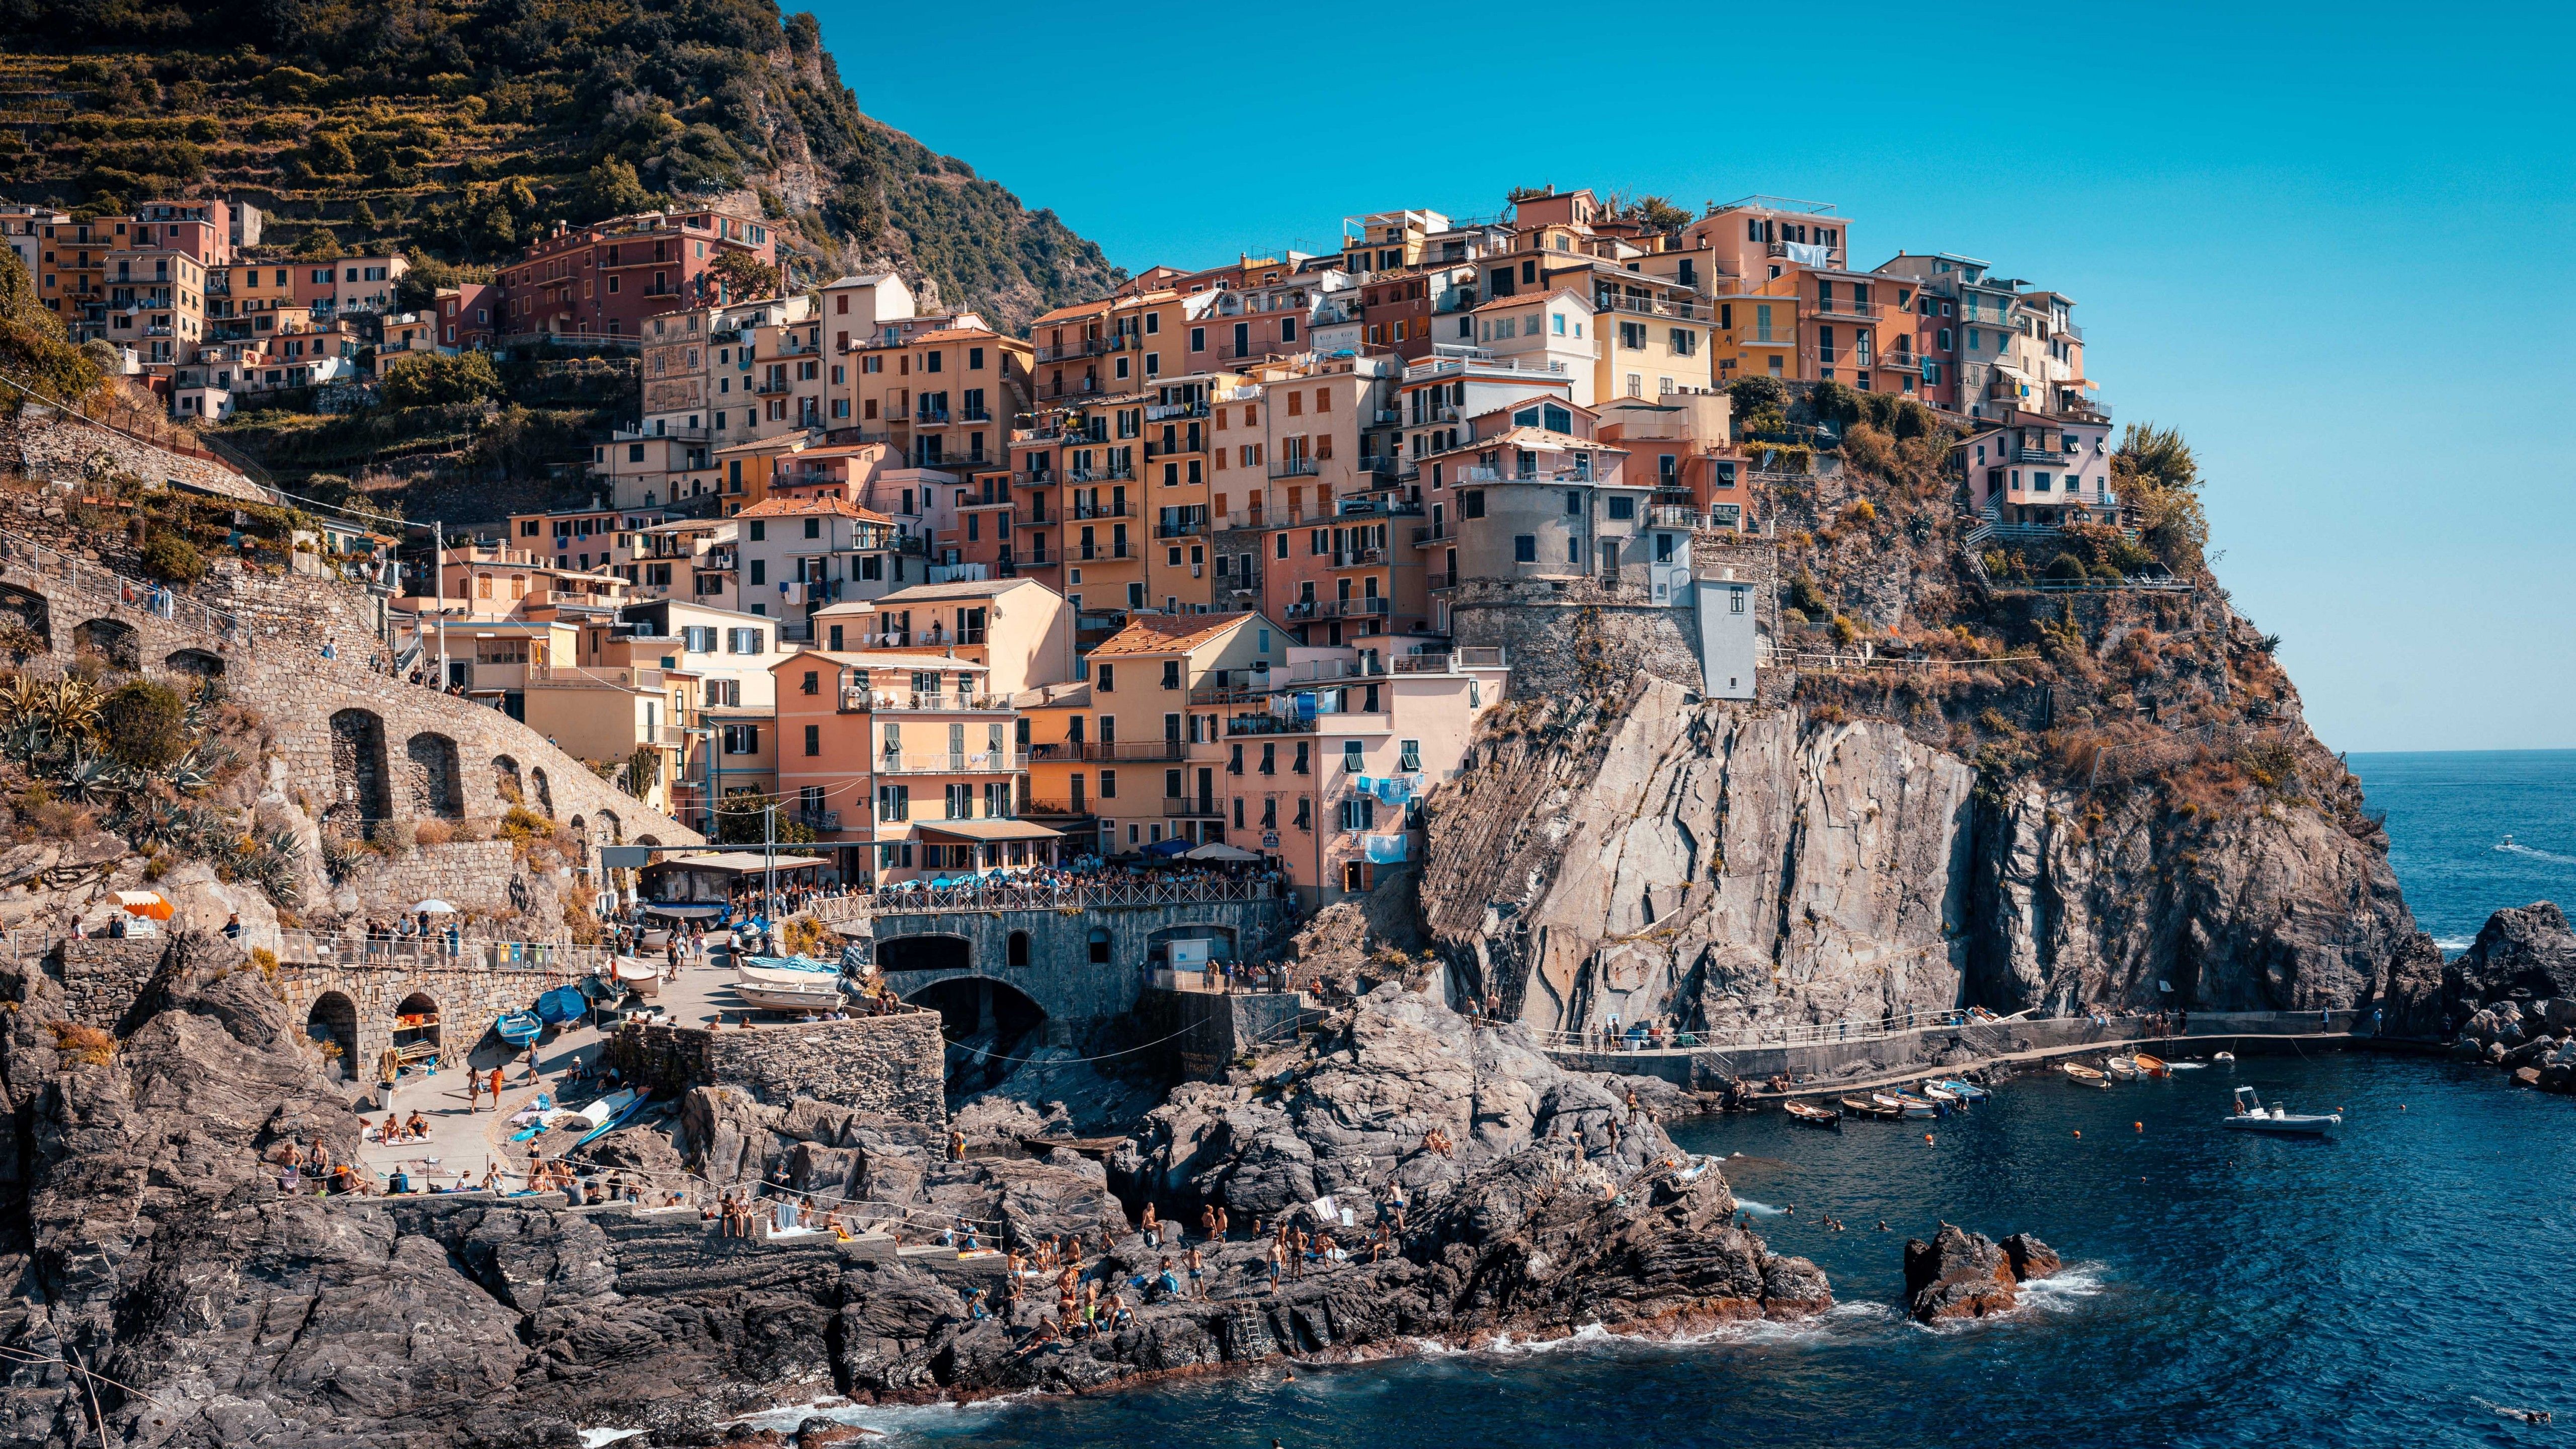 Cinque Terre 4K Wallpaper, Coastline, Buildings, Town, Rocks, Harbor, Cliff, Italy, 5K, World